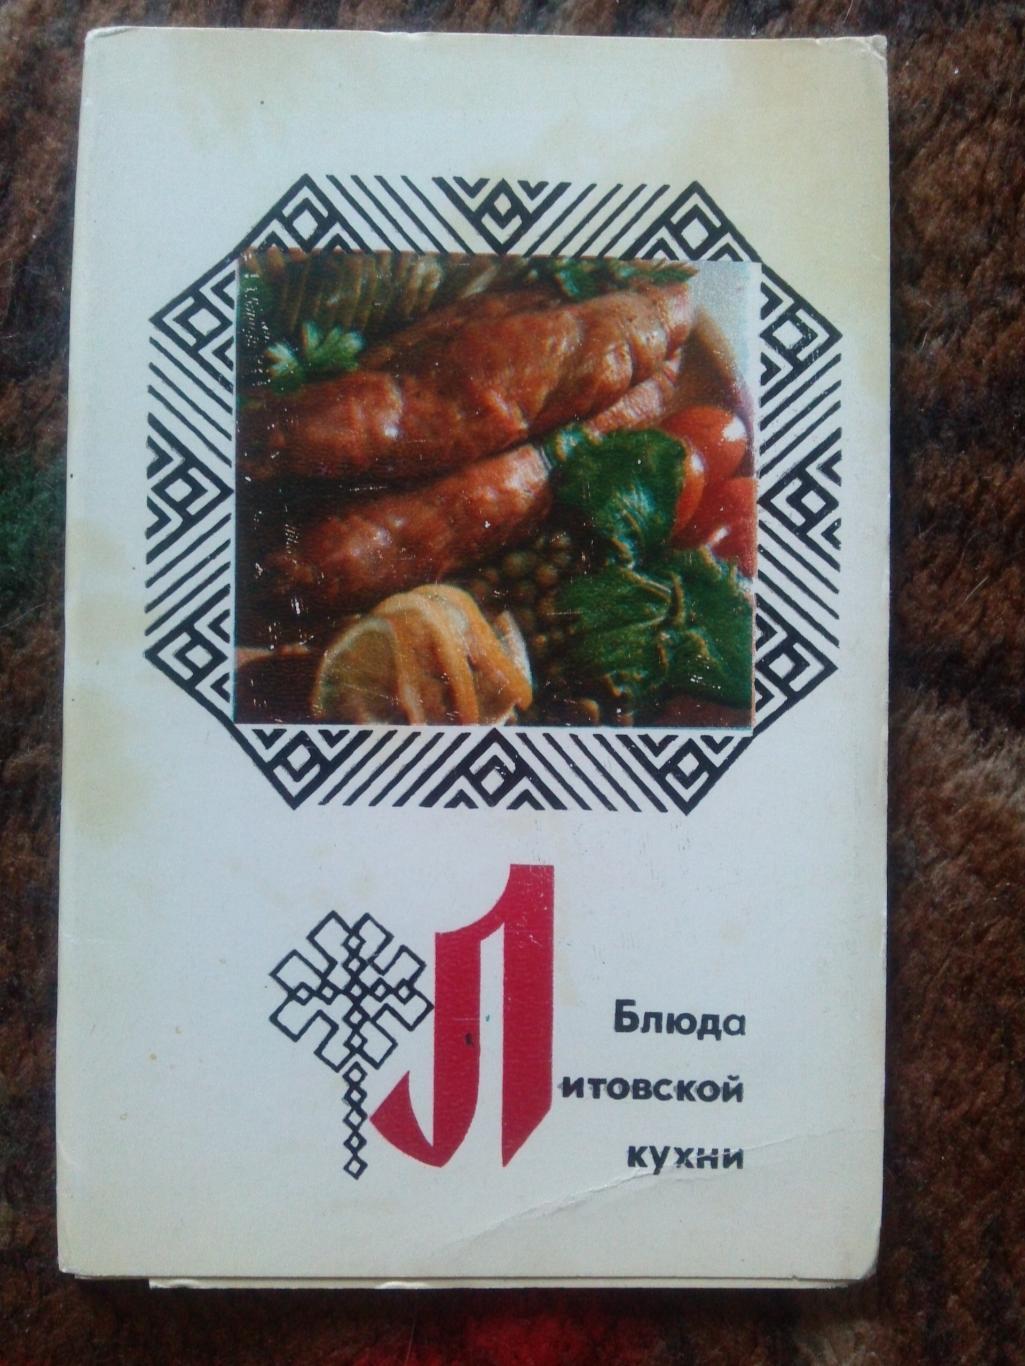 Блюда литовской кухни 1974 г. полный набор - 15 открыток (Кулинария , рецепты)